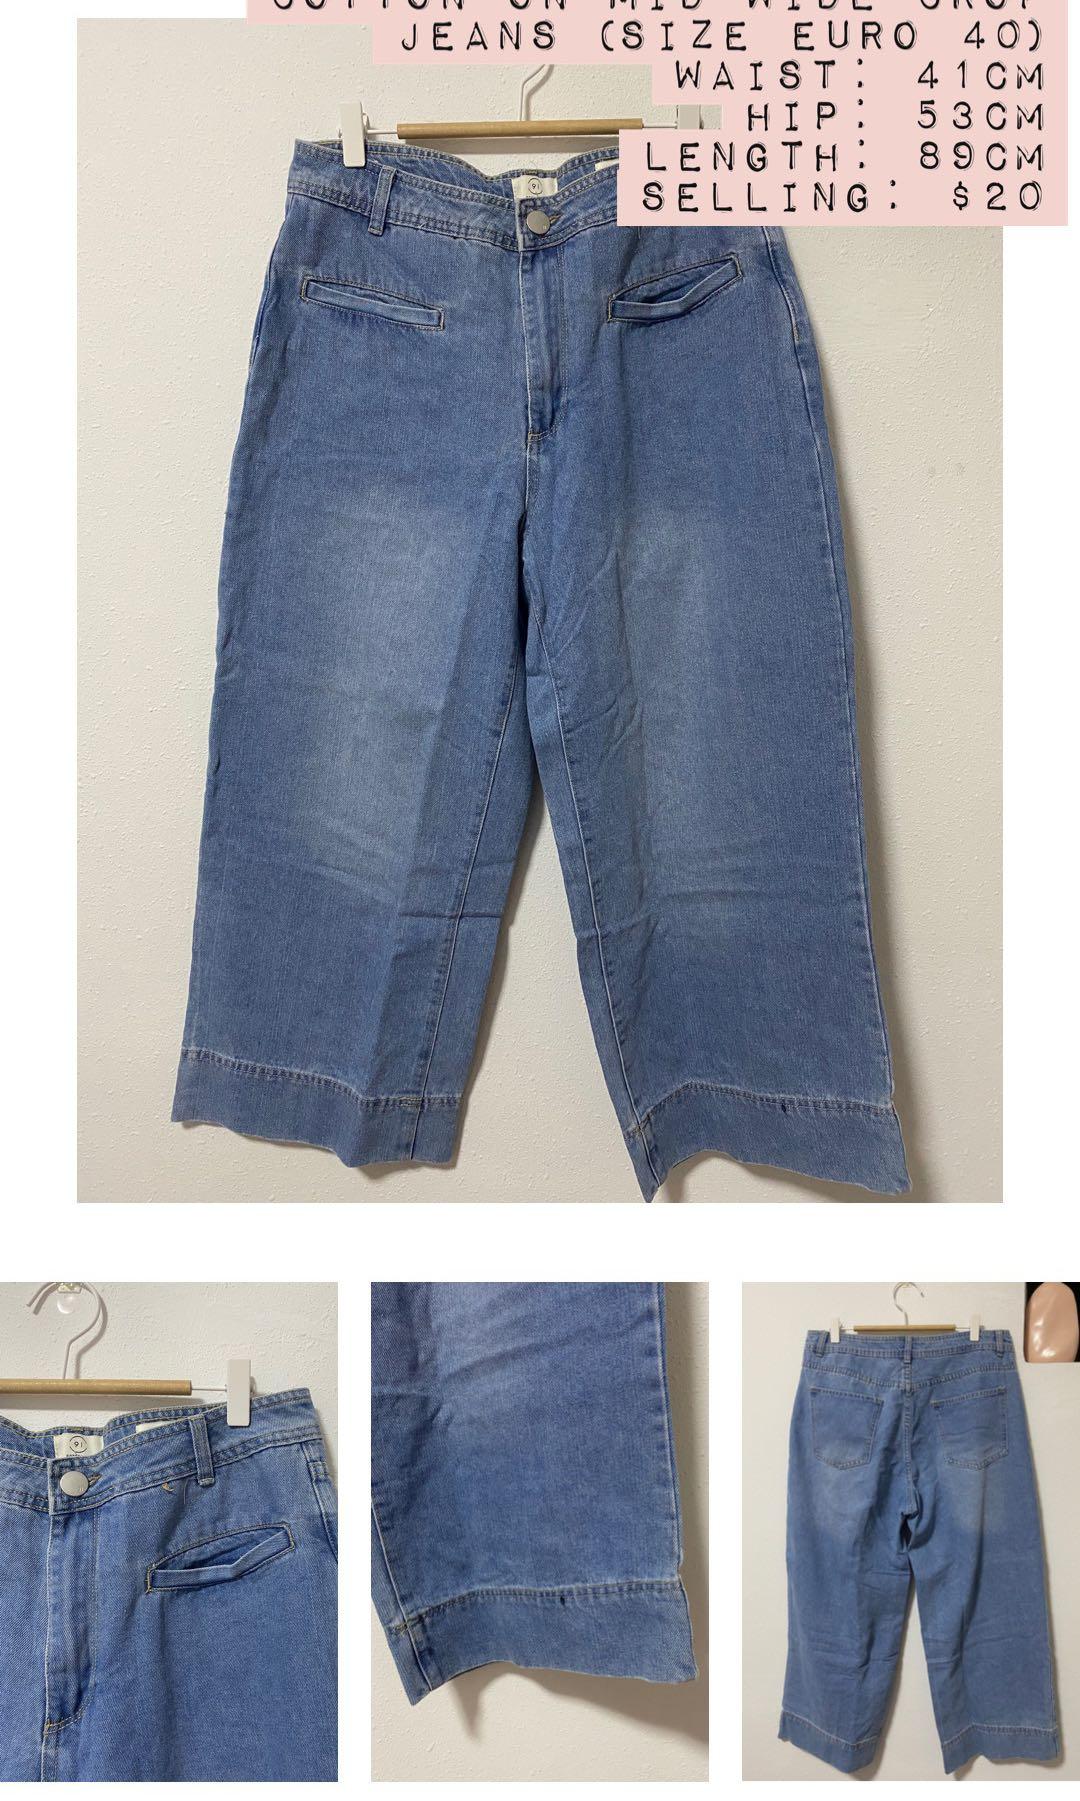 size 0 jeans in european